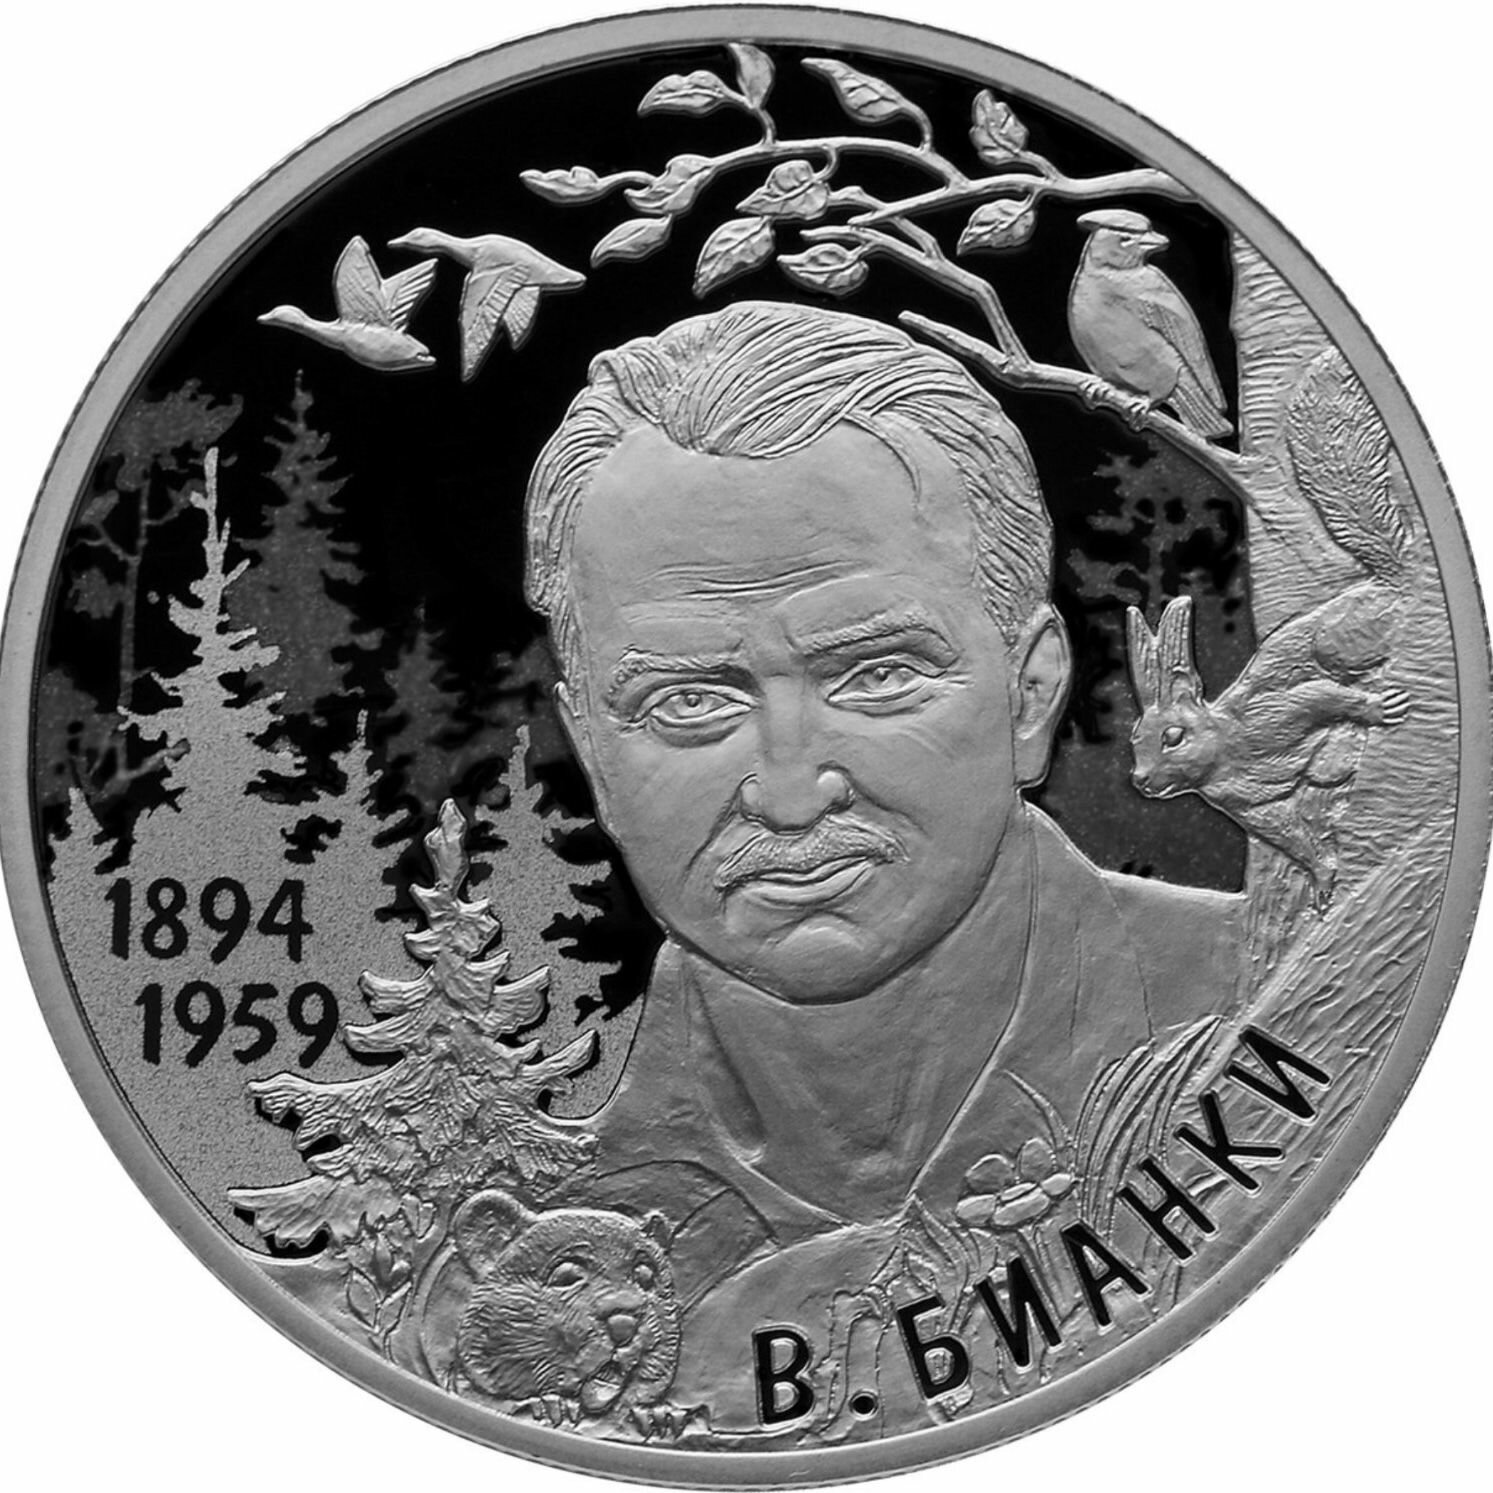 Серебряная монета (15.55 г) 2 рубля к 125-летию со дня рождения писателя Бианки в капсуле. СПМД 2019 PF